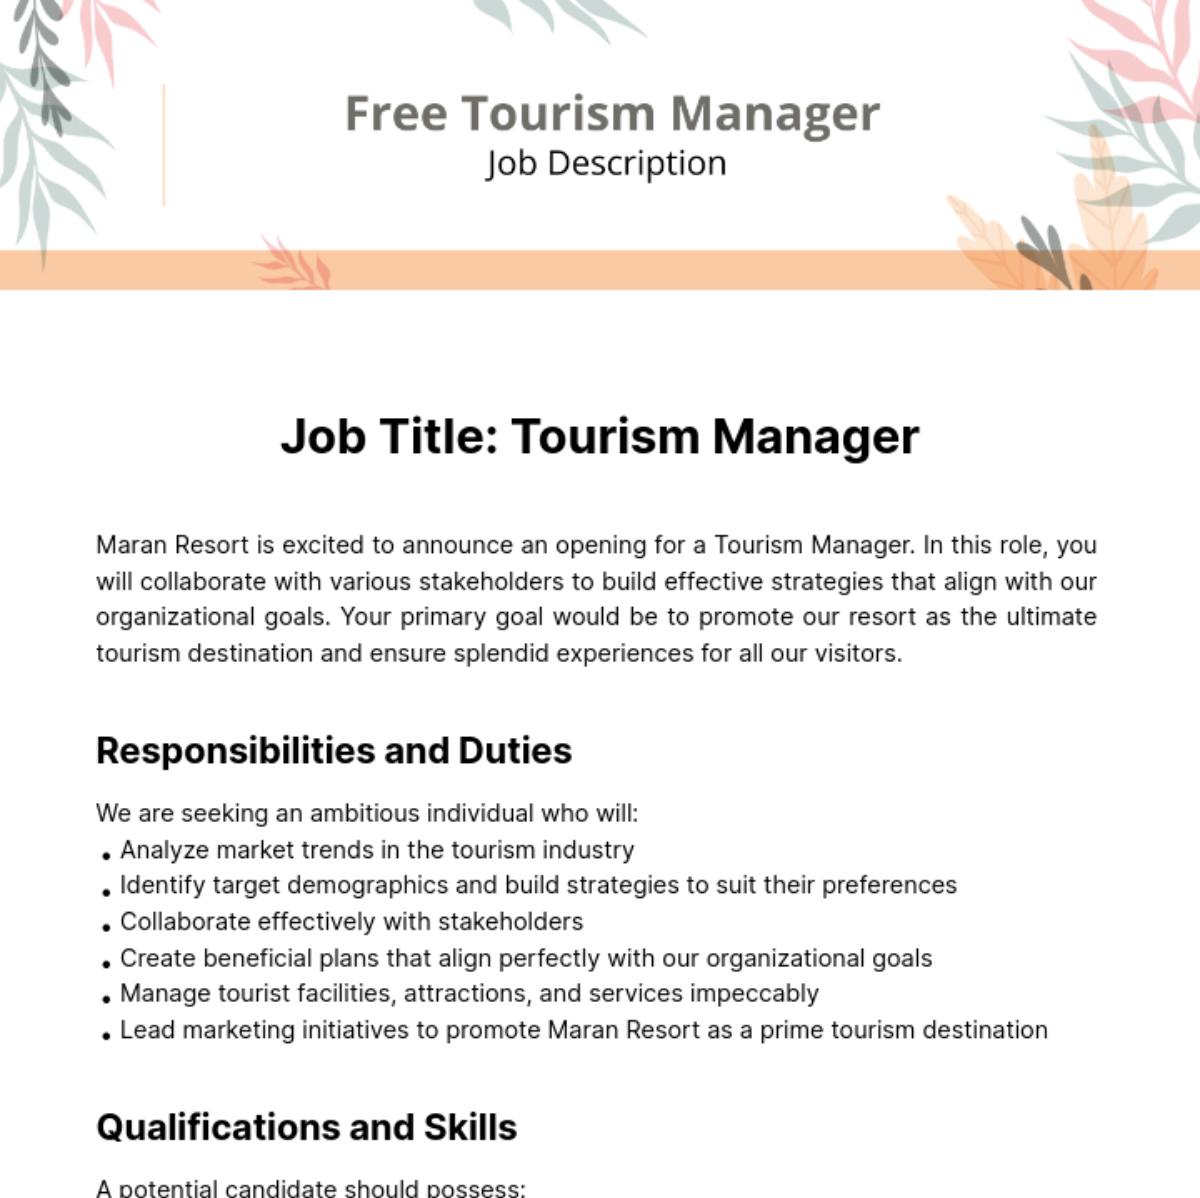 Free Tourism Manager Job Description Template